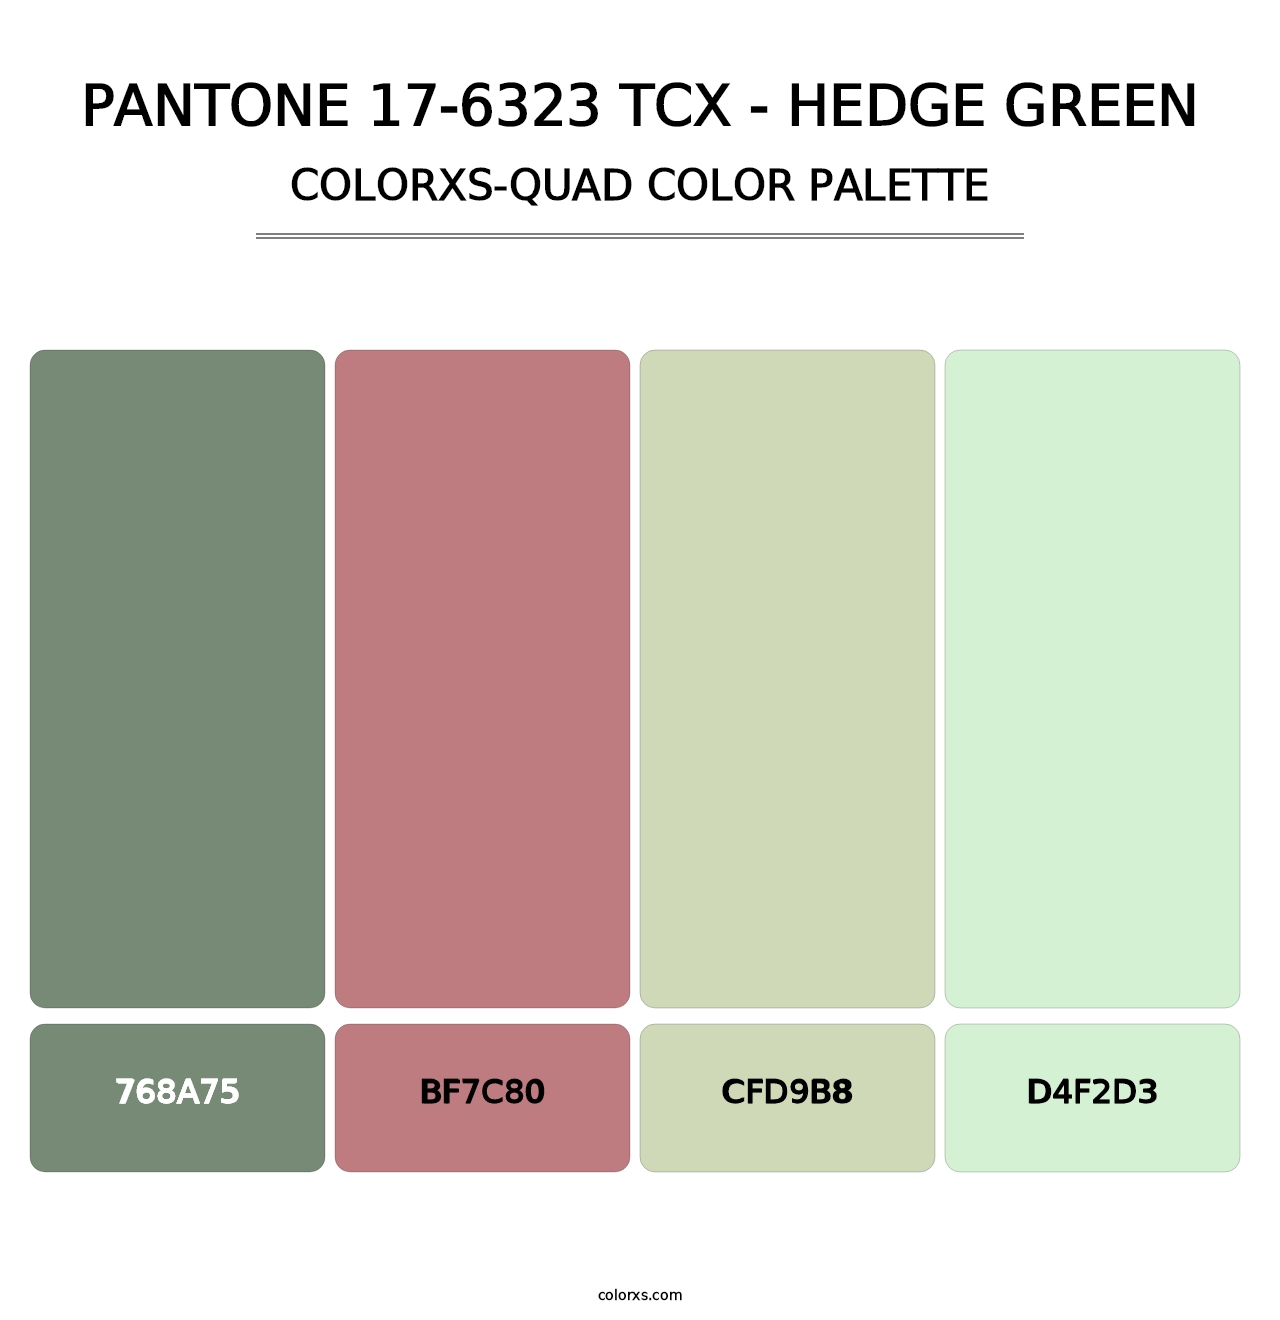 PANTONE 17-6323 TCX - Hedge Green - Colorxs Quad Palette